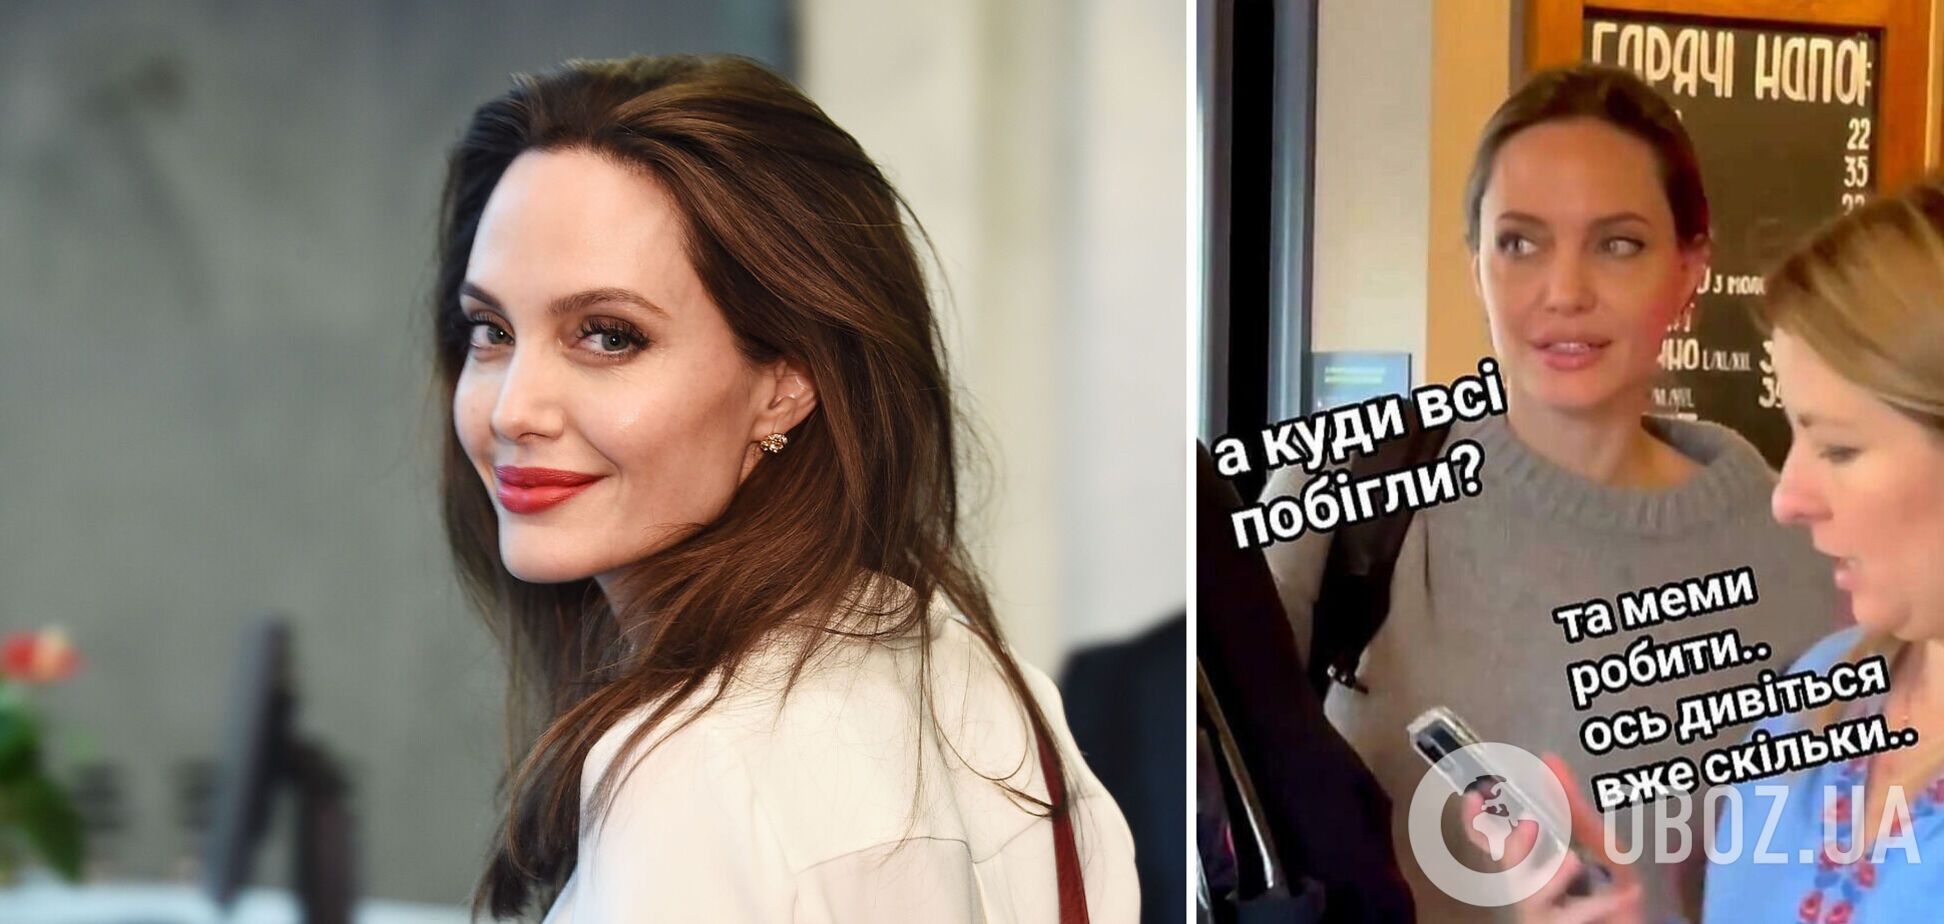 Анджелина Джоли стала героиней мемов после визита во Львов. Самые удачные шутки украинцев